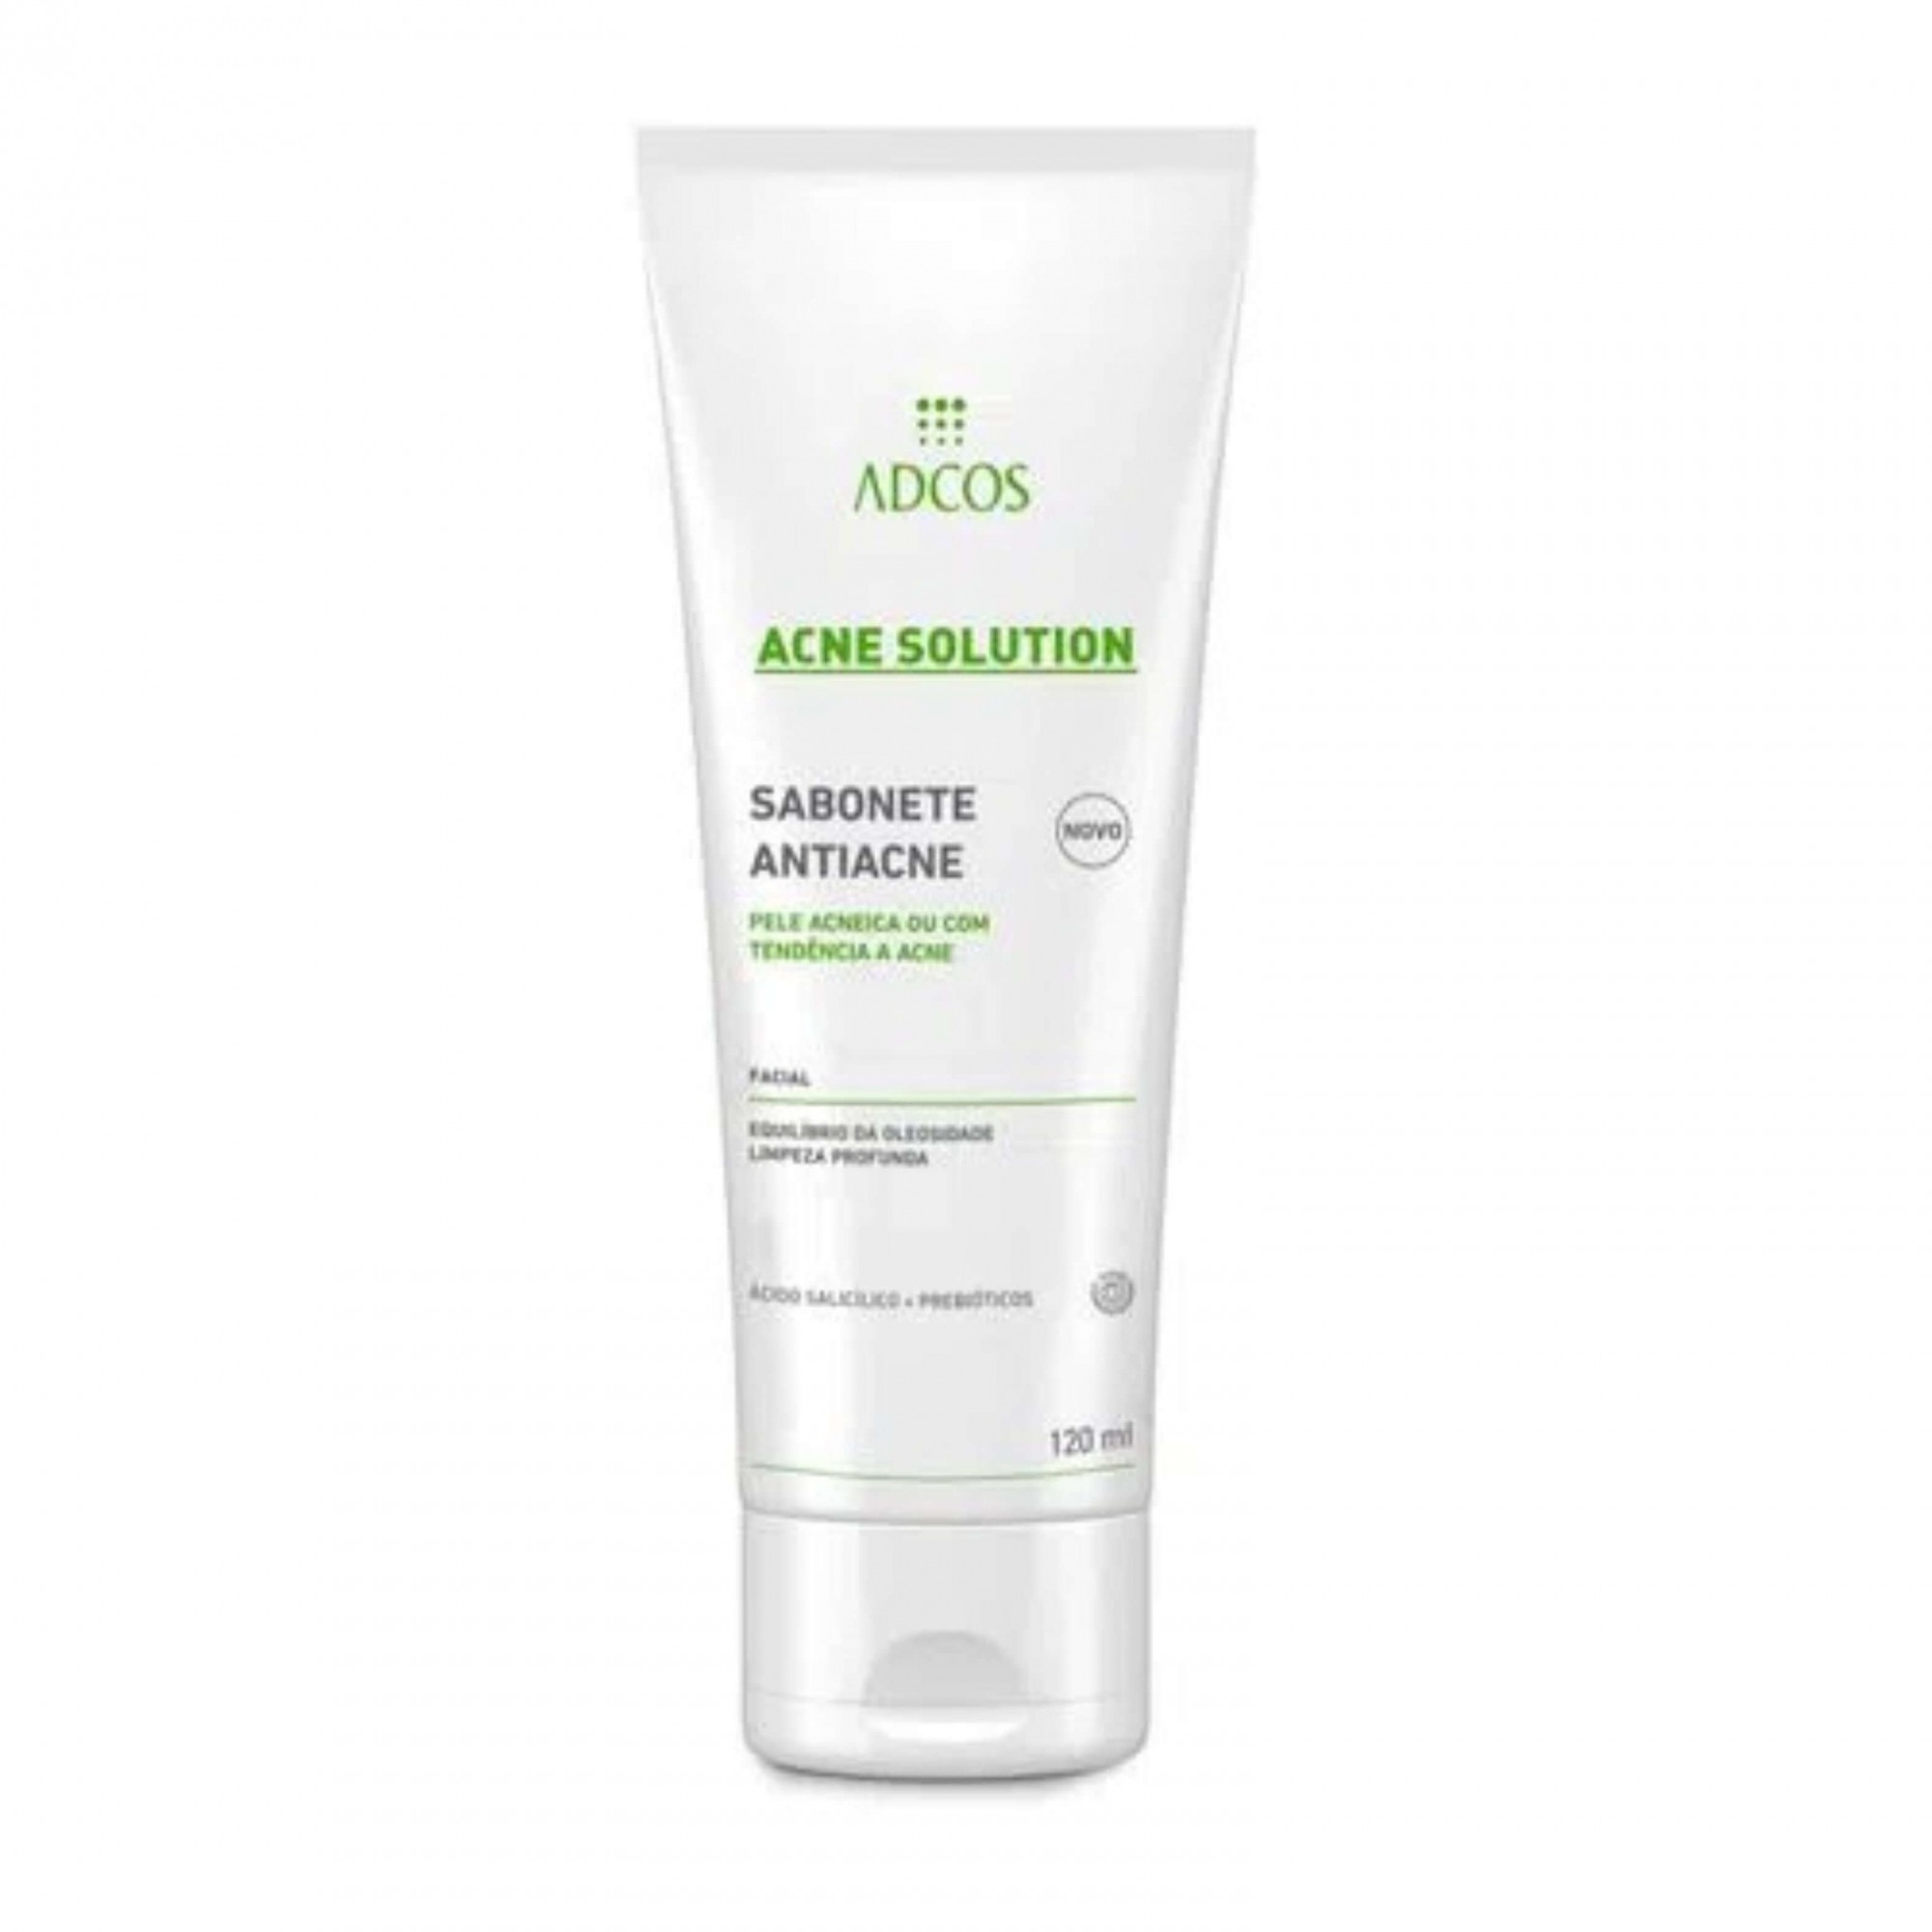 Acne Solution - Sabonete Anti Acne ADCOS 120ml